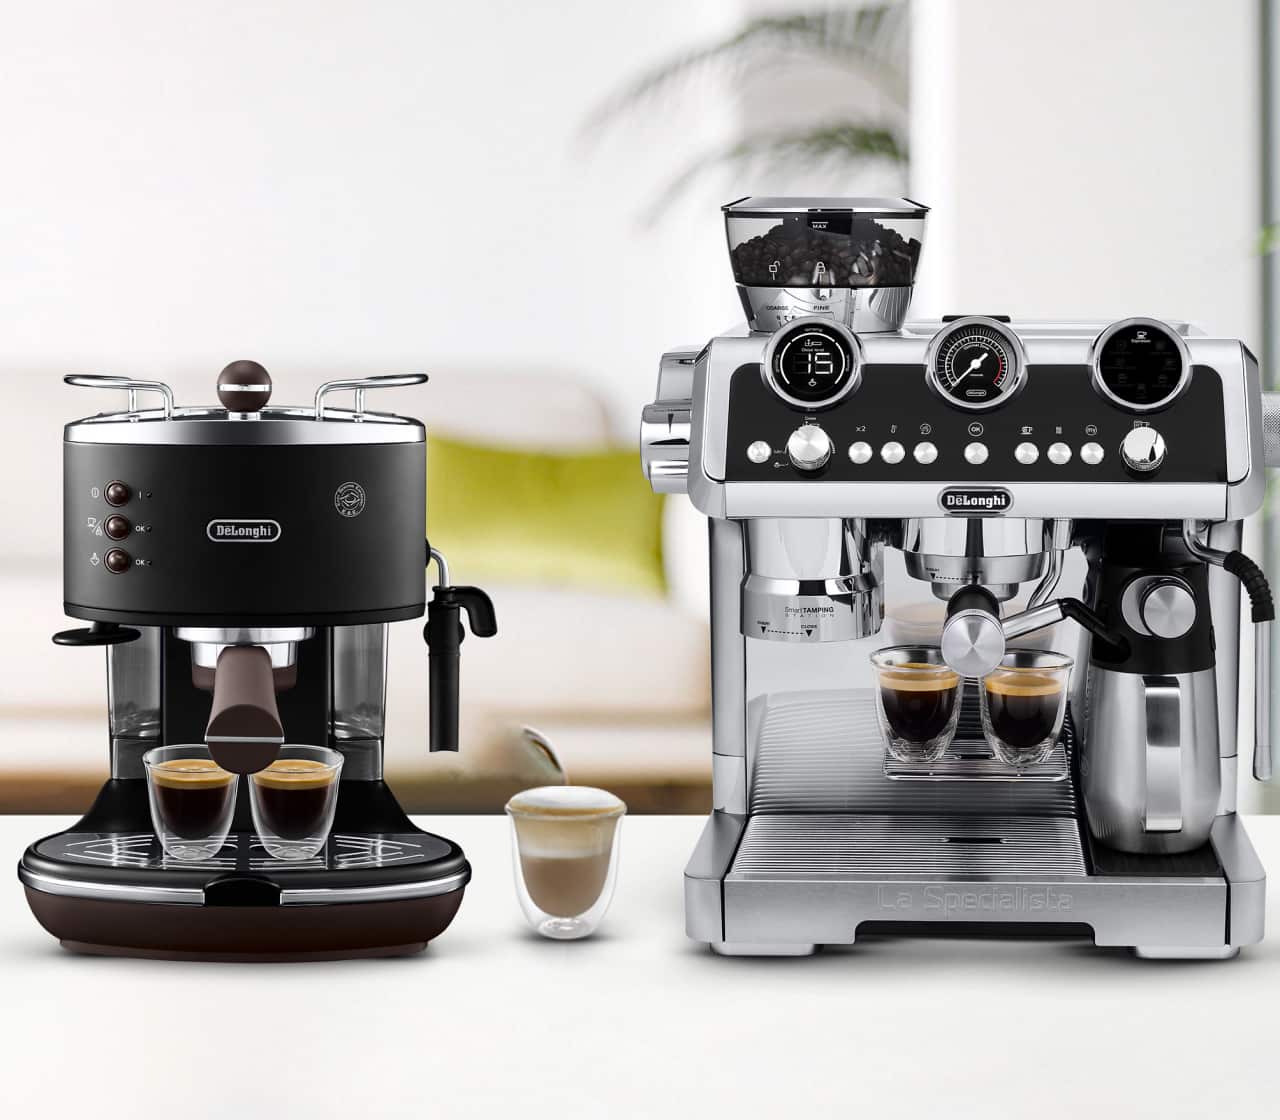 Manual espresso makers